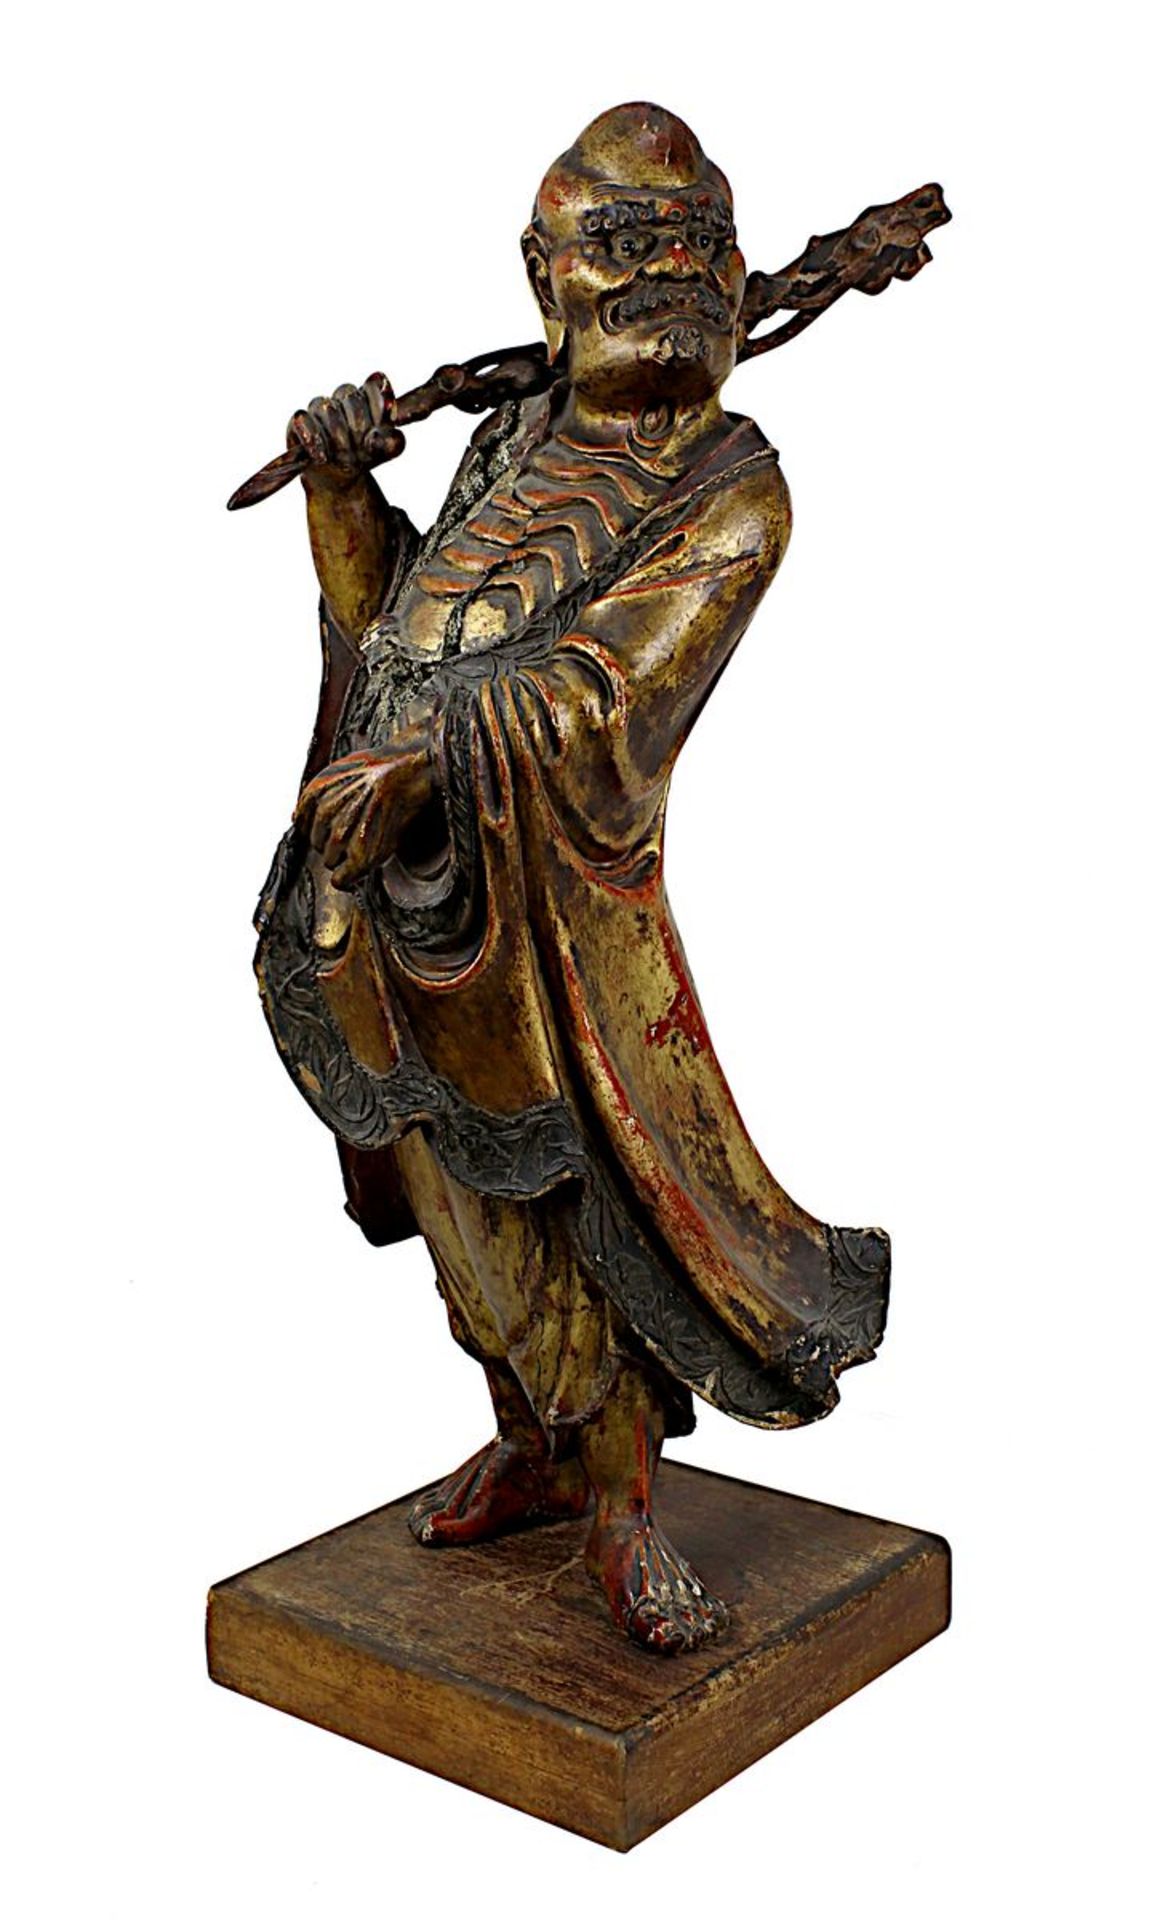 Holzfigur knochiger Mann mit Stock, China, späte Ming-Dynastie, Oberfläche in Lack gefasst, mit